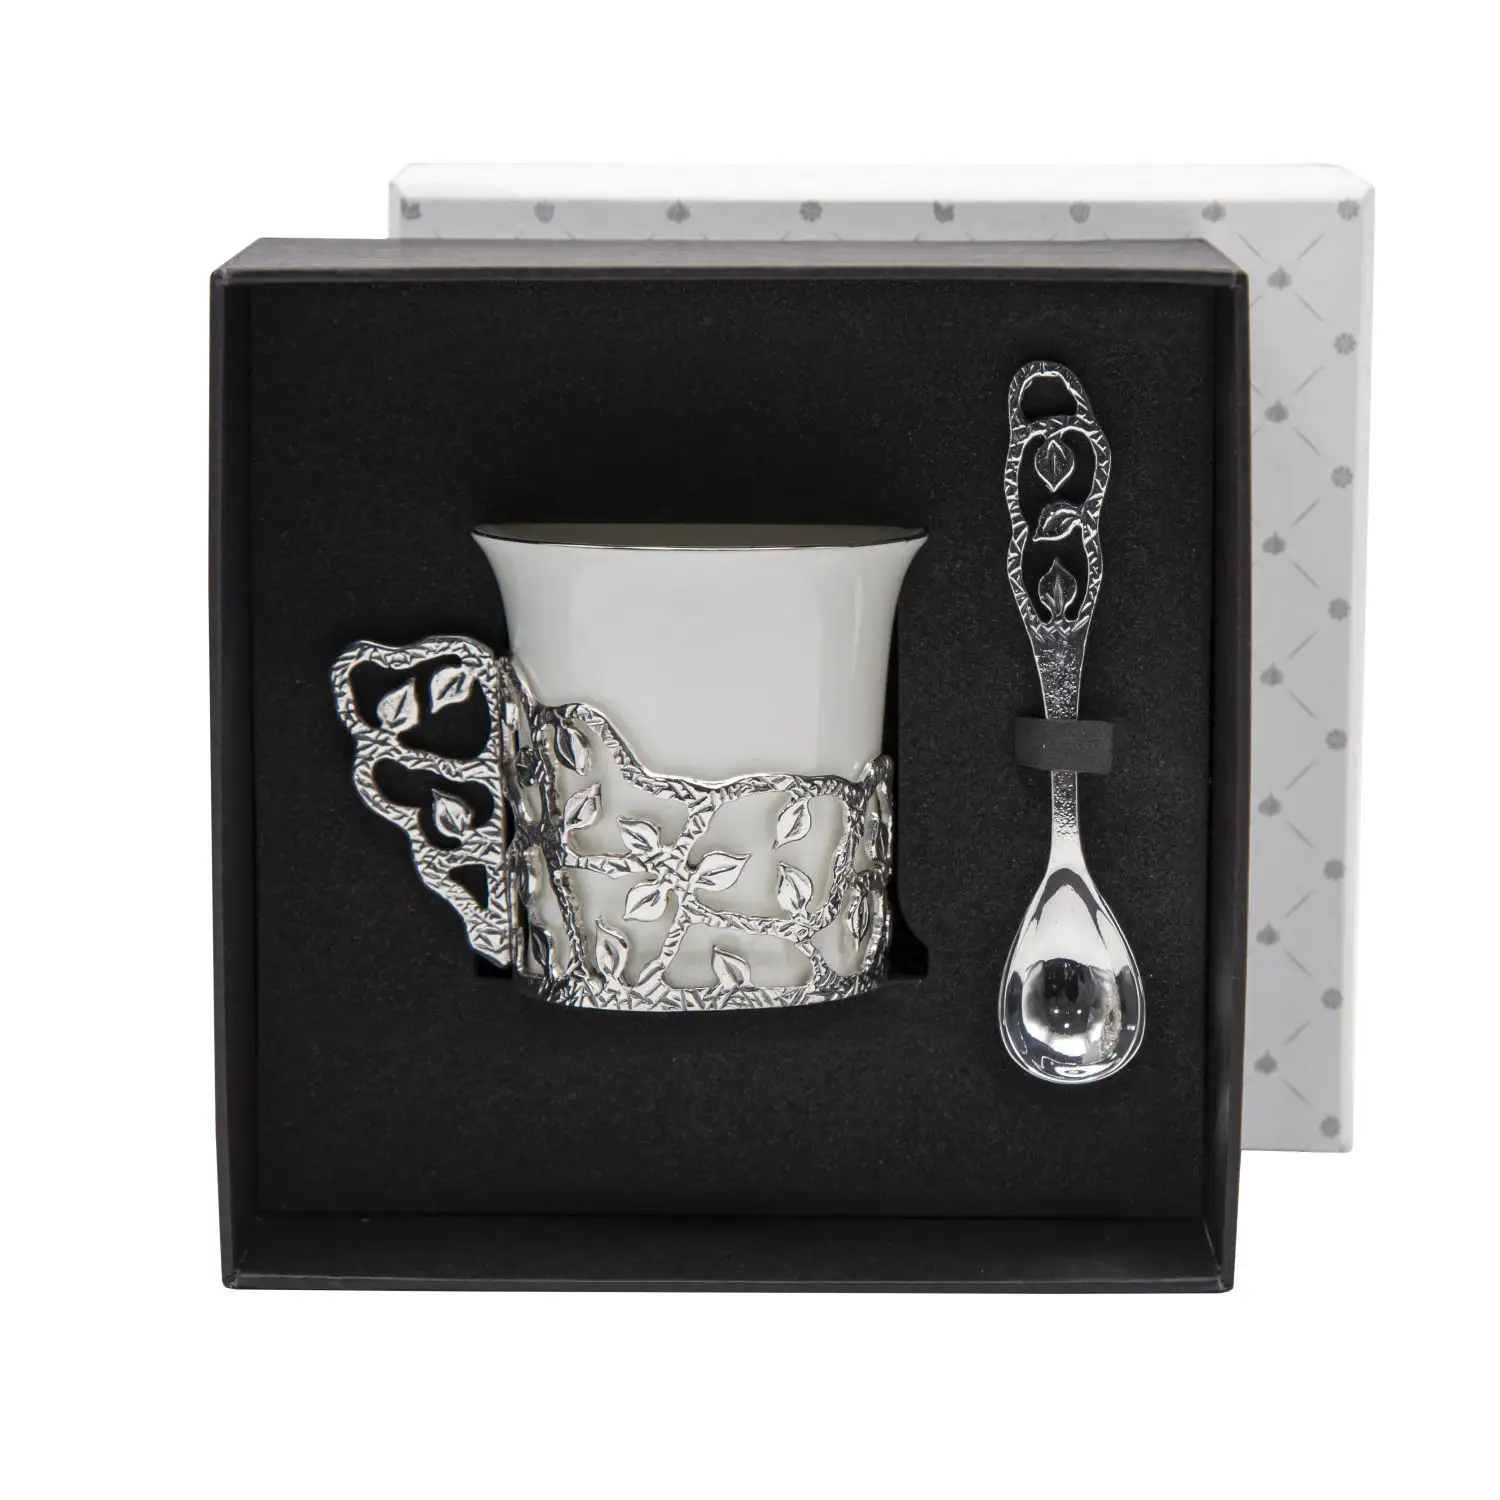 Набор чашек кофейных Листопад посеребренный с чернением 2 предмета с ложками набор чашек кофейных глухарь ложки из серебра 4 предмета